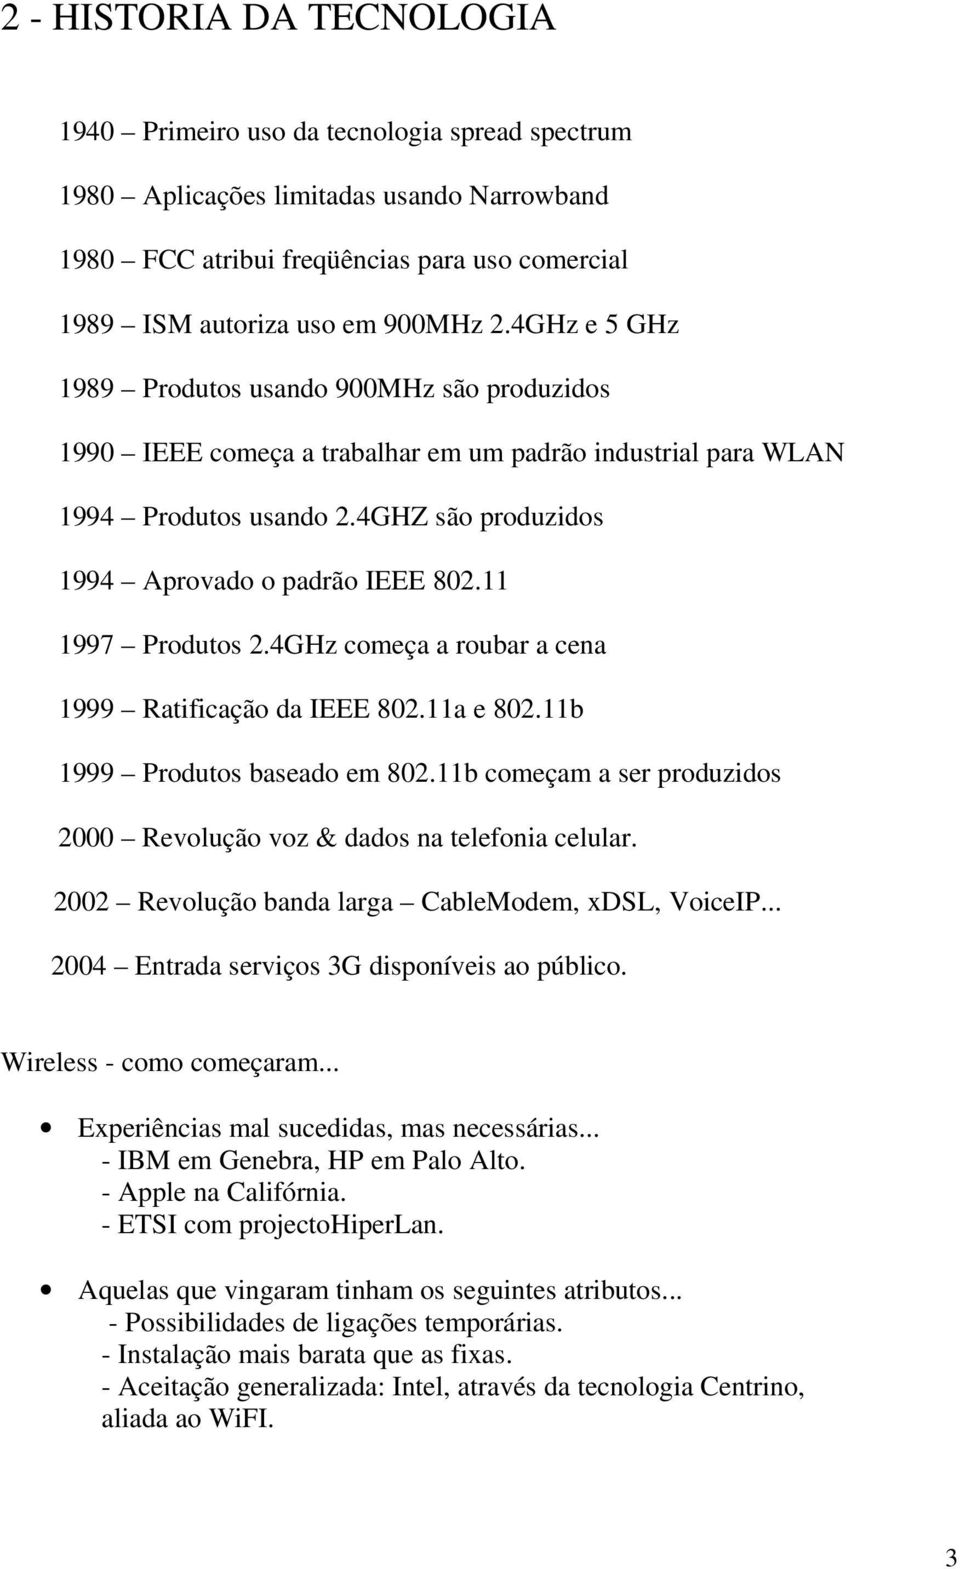 11 1997 Produtos 2.4GHz começa a roubar a cena 1999 Ratificação da IEEE 802.11a e 802.11b 1999 Produtos baseado em 802.11b começam a ser produzidos 2000 Revolução voz & dados na telefonia celular.